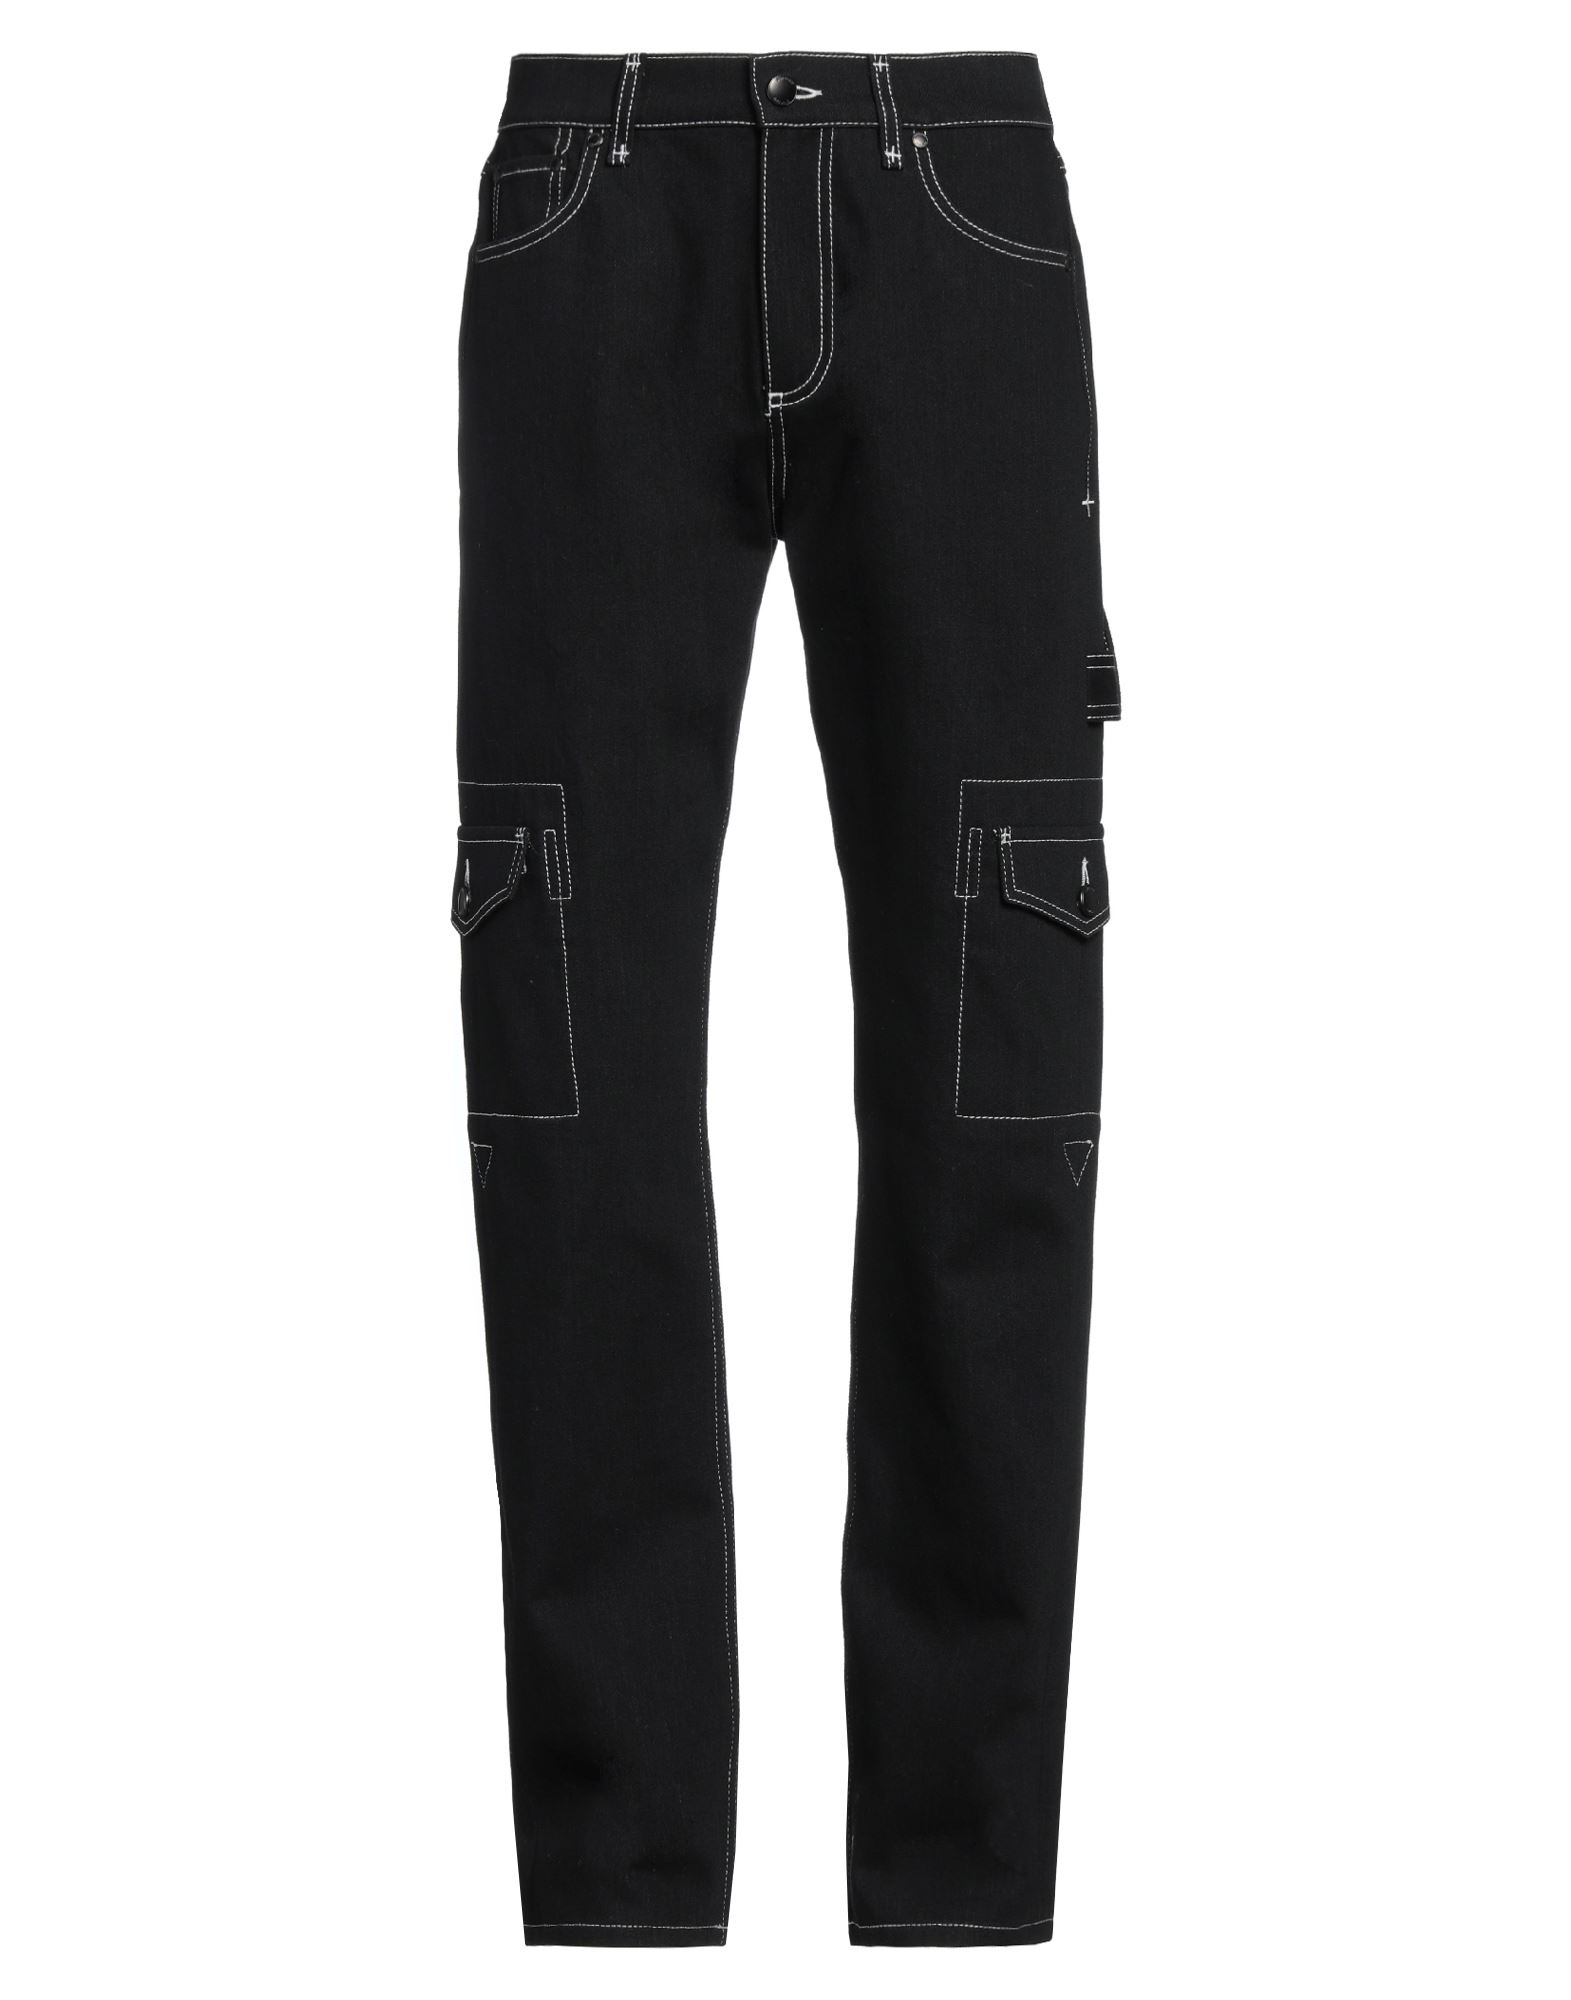 Shop Burberry Man Jeans Black Size 29 Cotton